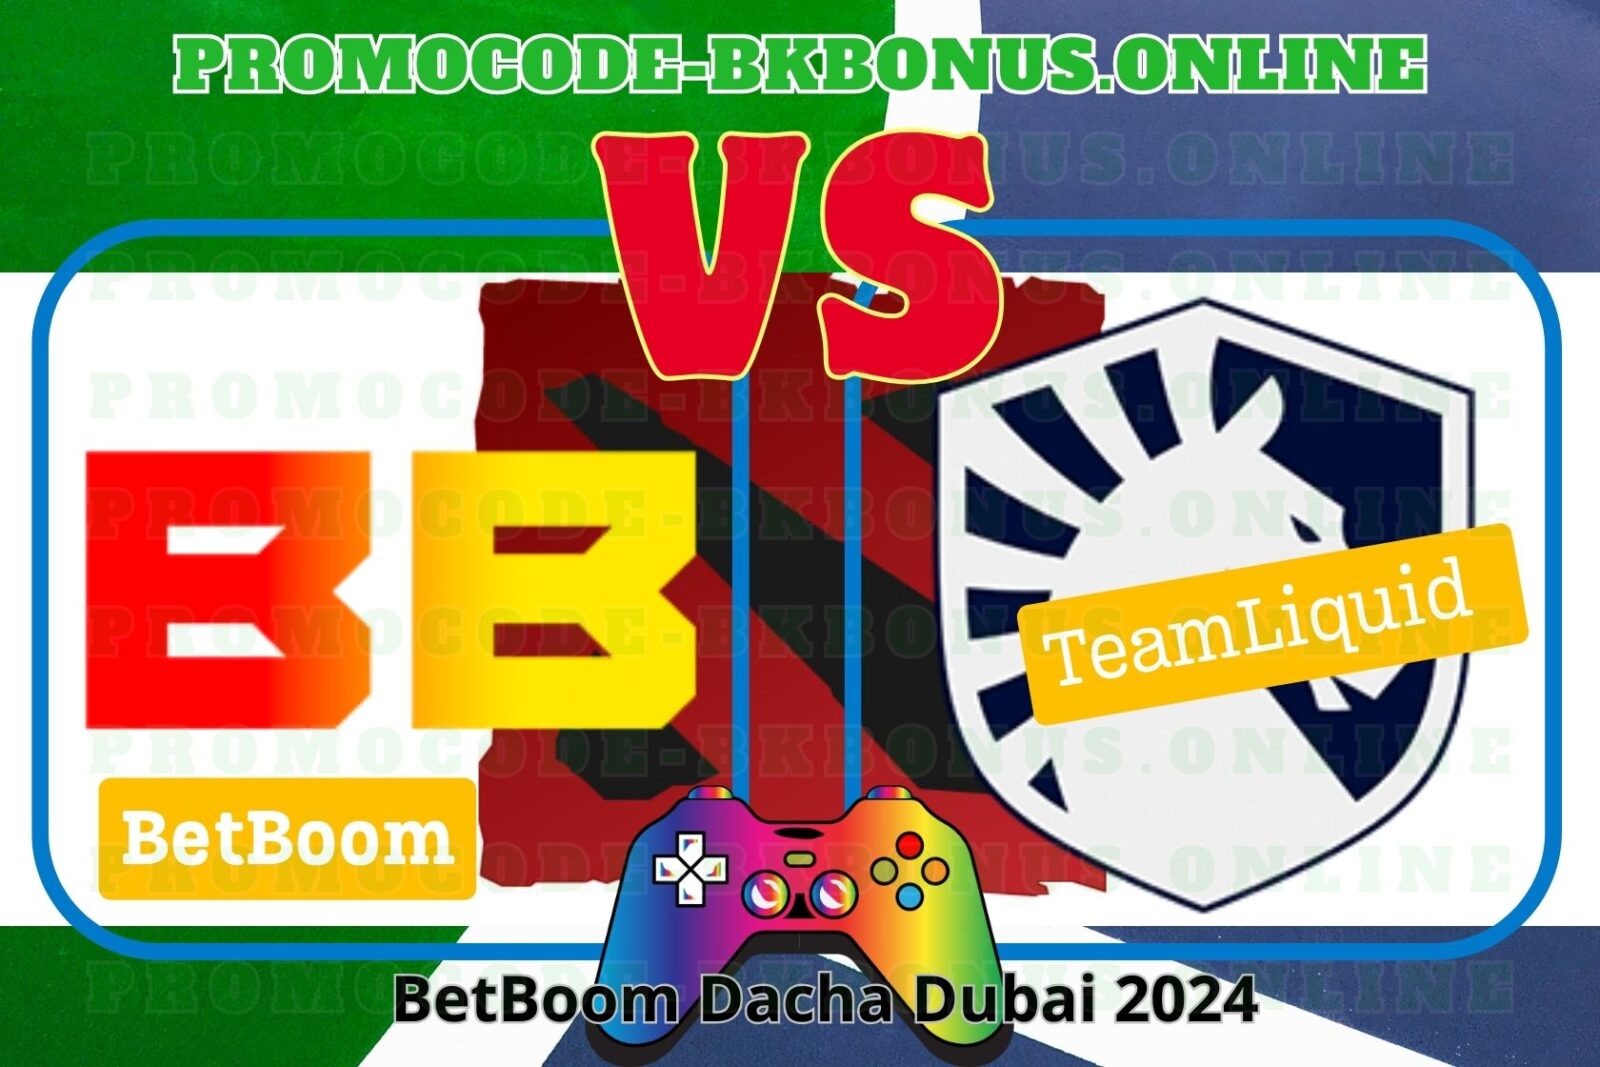 Прогноз предстоящего матча BetBoom Team – Team Liquid в рамках турнира Dota 2. BetBoom Dacha Dubai 2024, Финал (нижняя сетка). Начало встречи 16 февраля 2024 года.